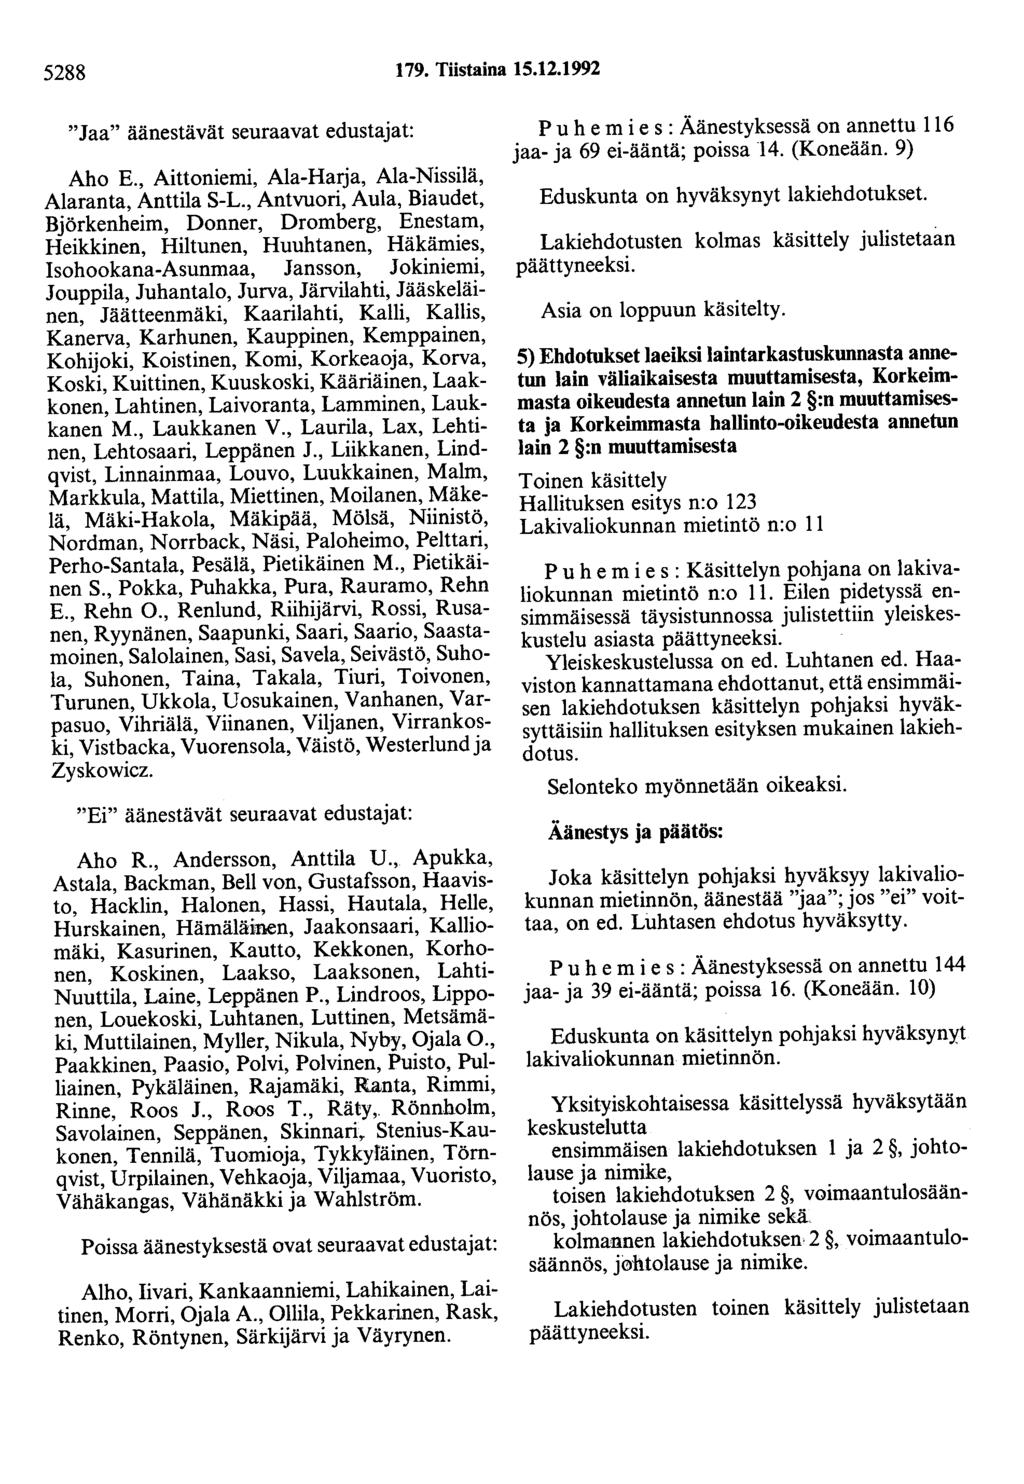 5288 179. Tiistaina 15.12.1992 "Jaa" äänestävät seuraavat edustajat: Aho E., Aittoniemi, Ala-Harja, Ala-Nissilä, Alaranta, Anttila S-L.